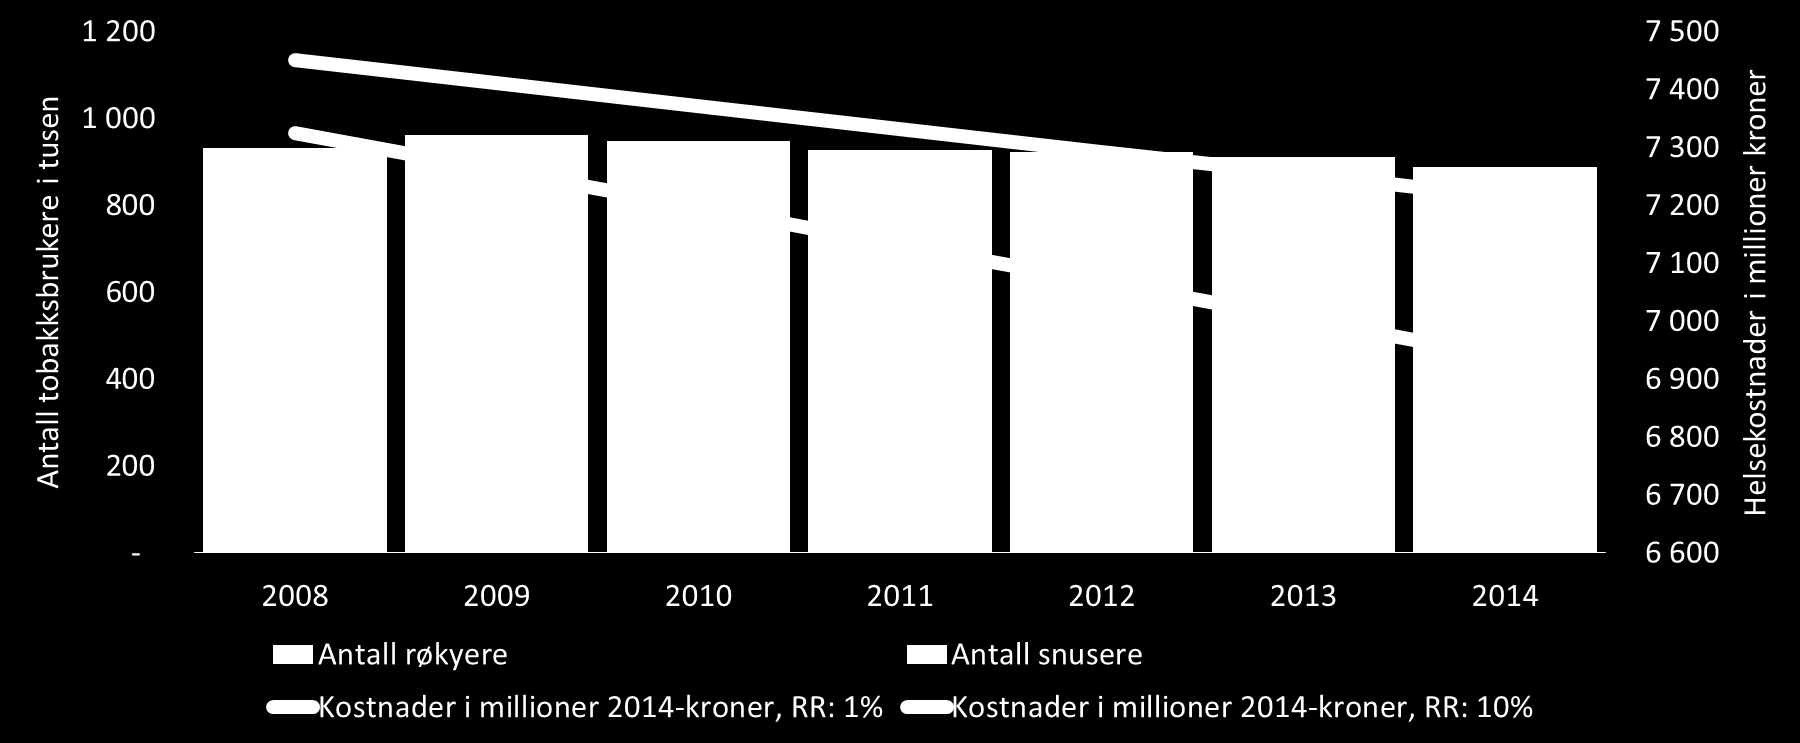 Figur 6: Antall tobakkbrukere i tusener og sparte helsekostnader per år fra 2008 til 2014.